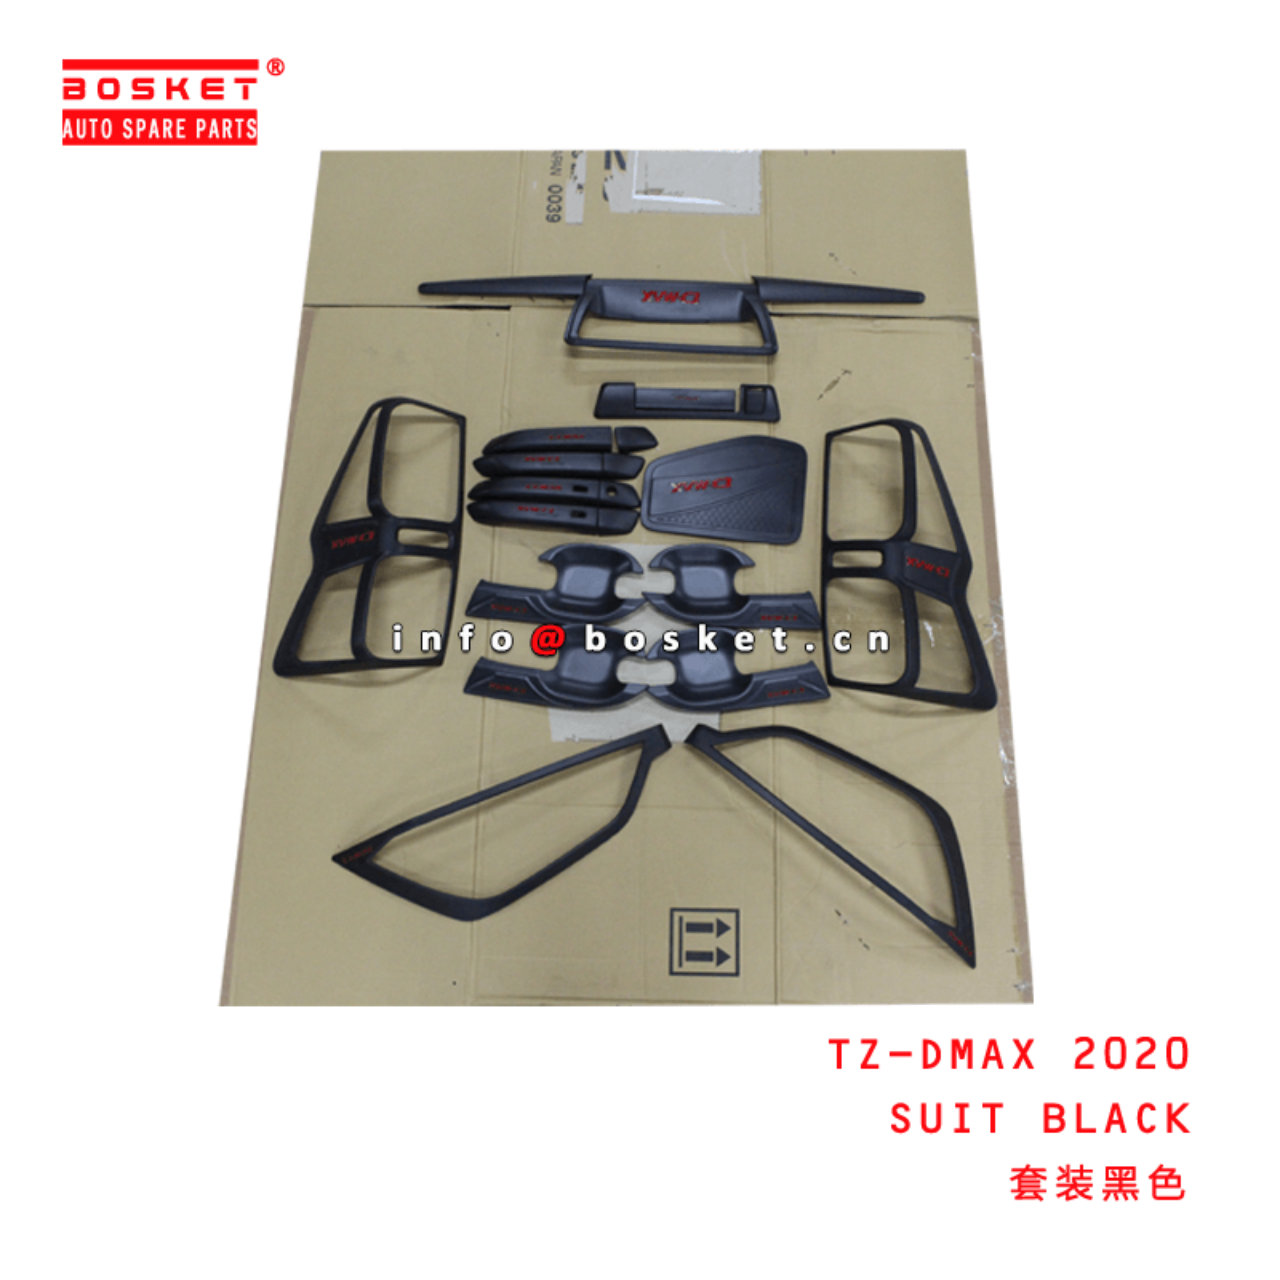  TZ-DMAX 2020 Suit Electroplating Suitable for ISUZU DMAX 2020